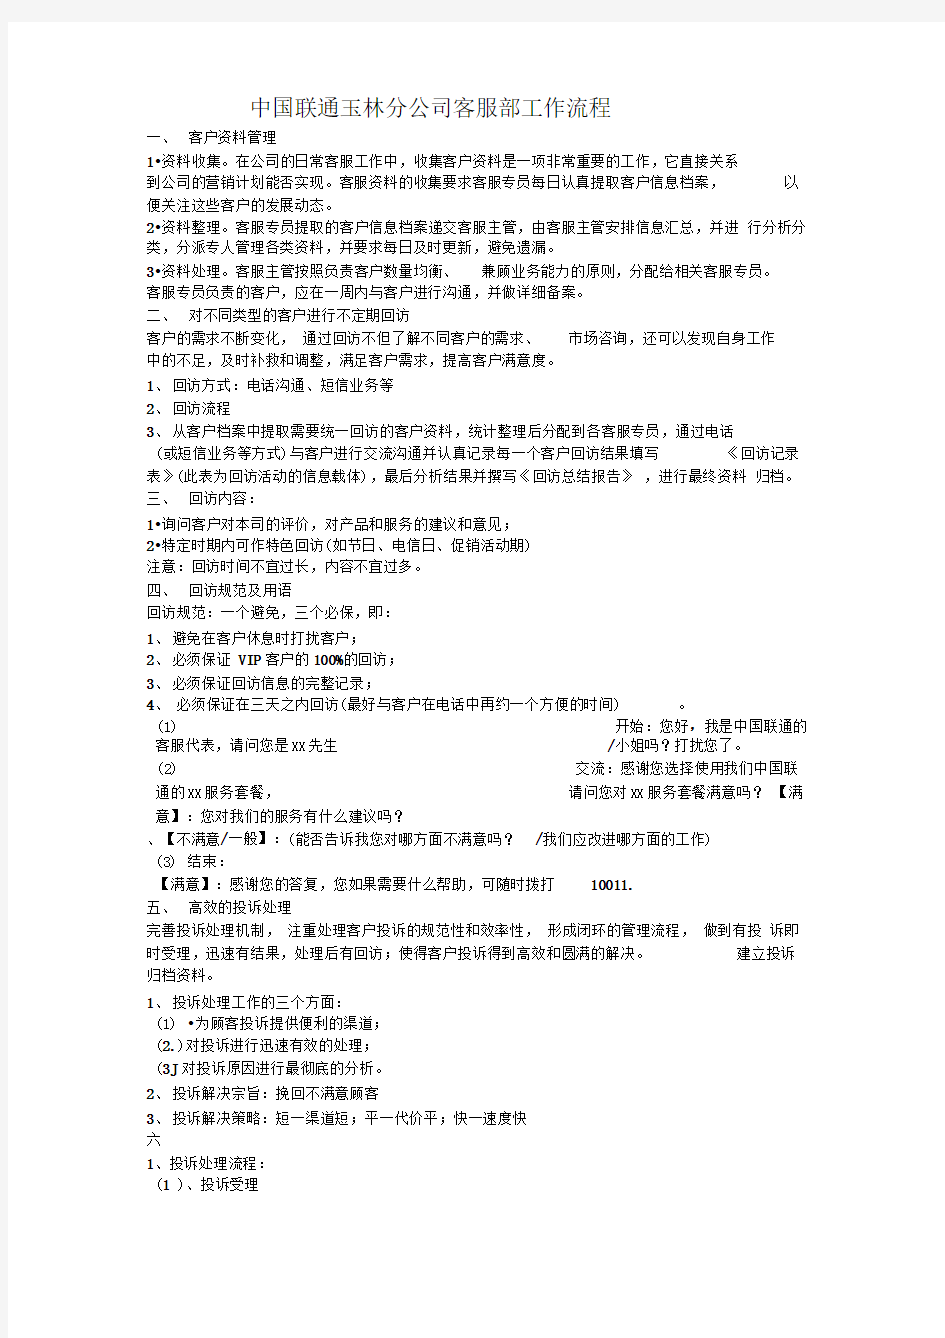 中国联通客服部工作流程